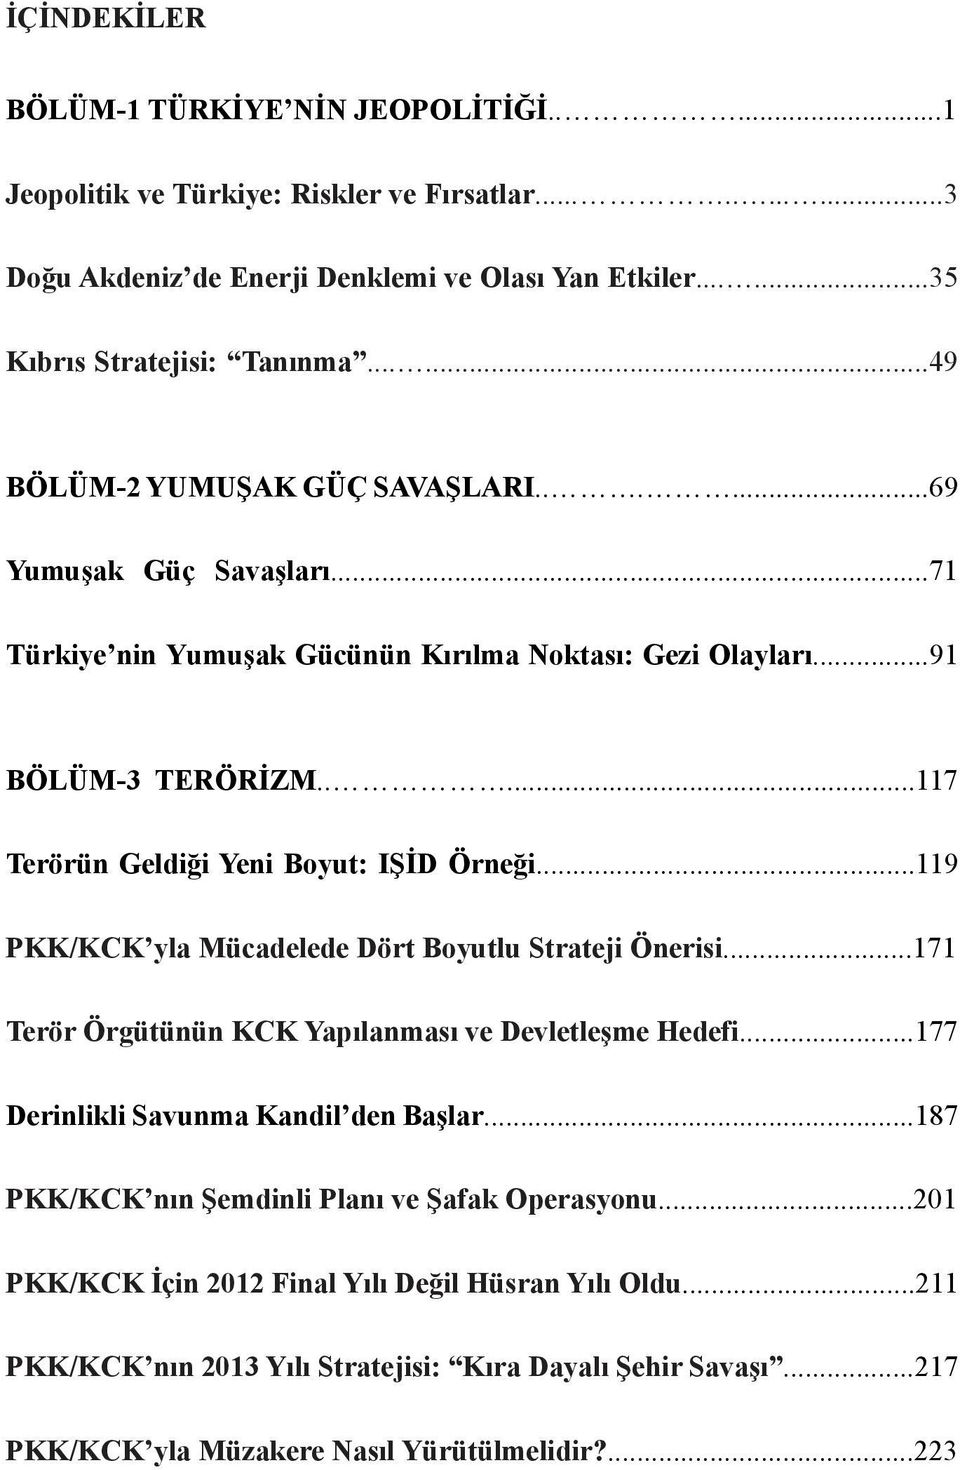 ....117 Terörün Geldiği Yeni Boyut: IŞİD Örneği...119 PKK/KCK yla Mücadelede Dört Boyutlu Strateji Önerisi...171 Terör Örgütünün KCK Yapılanması ve Devletleşme Hedefi.